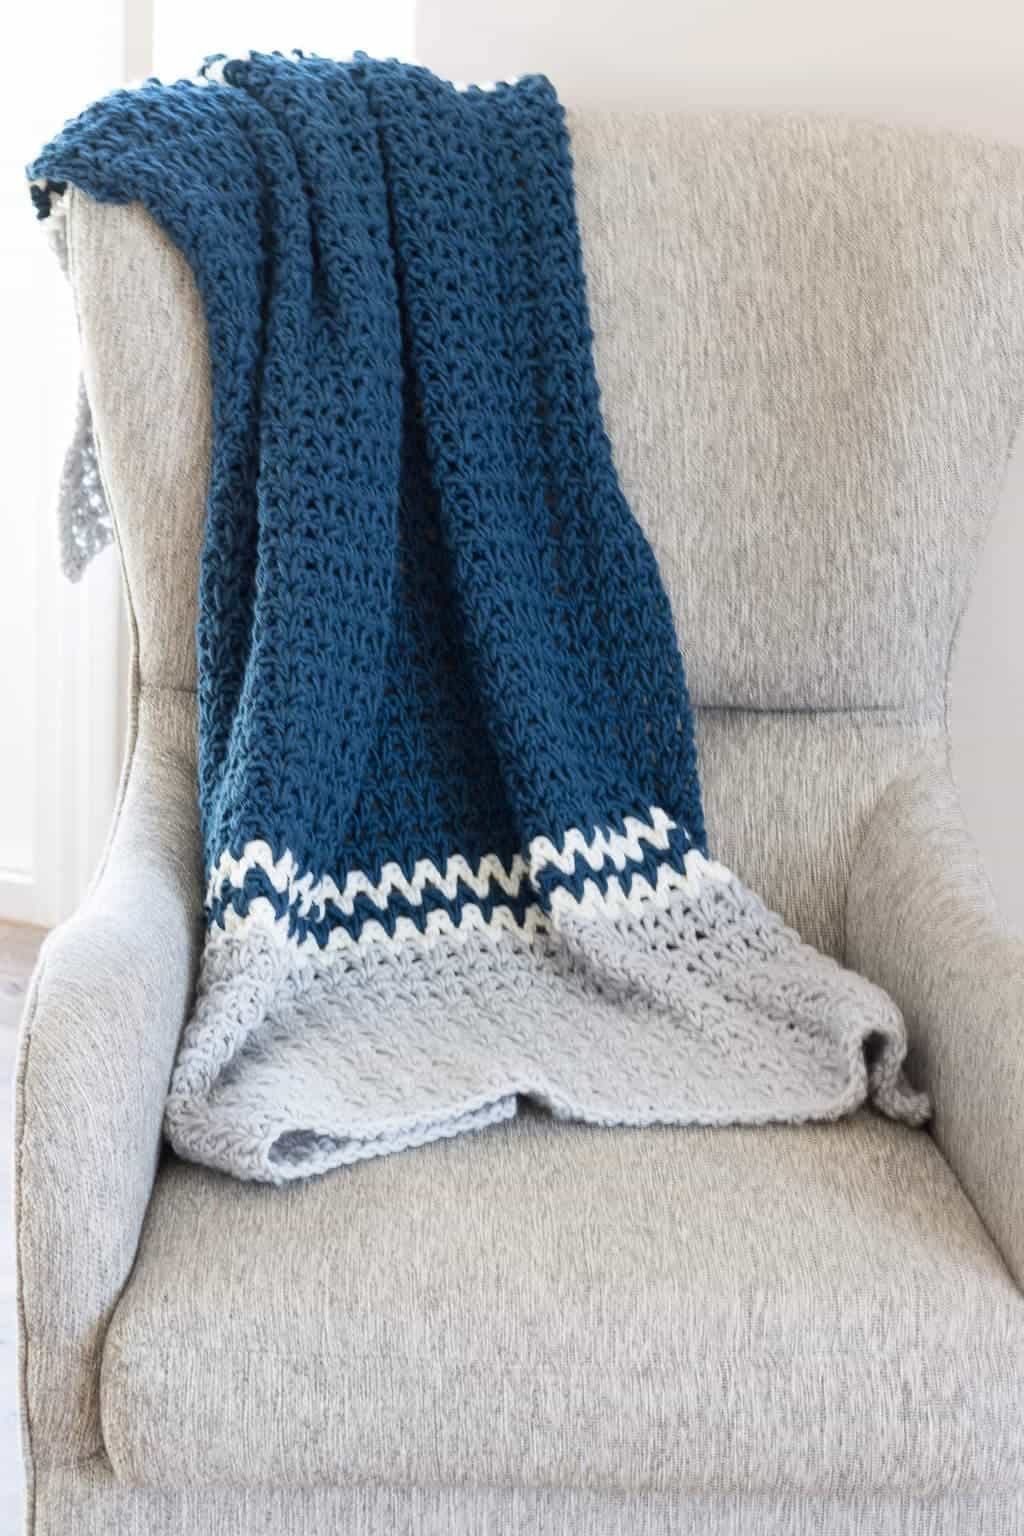 Easy V-Stitch Crochet Blanket Pattern